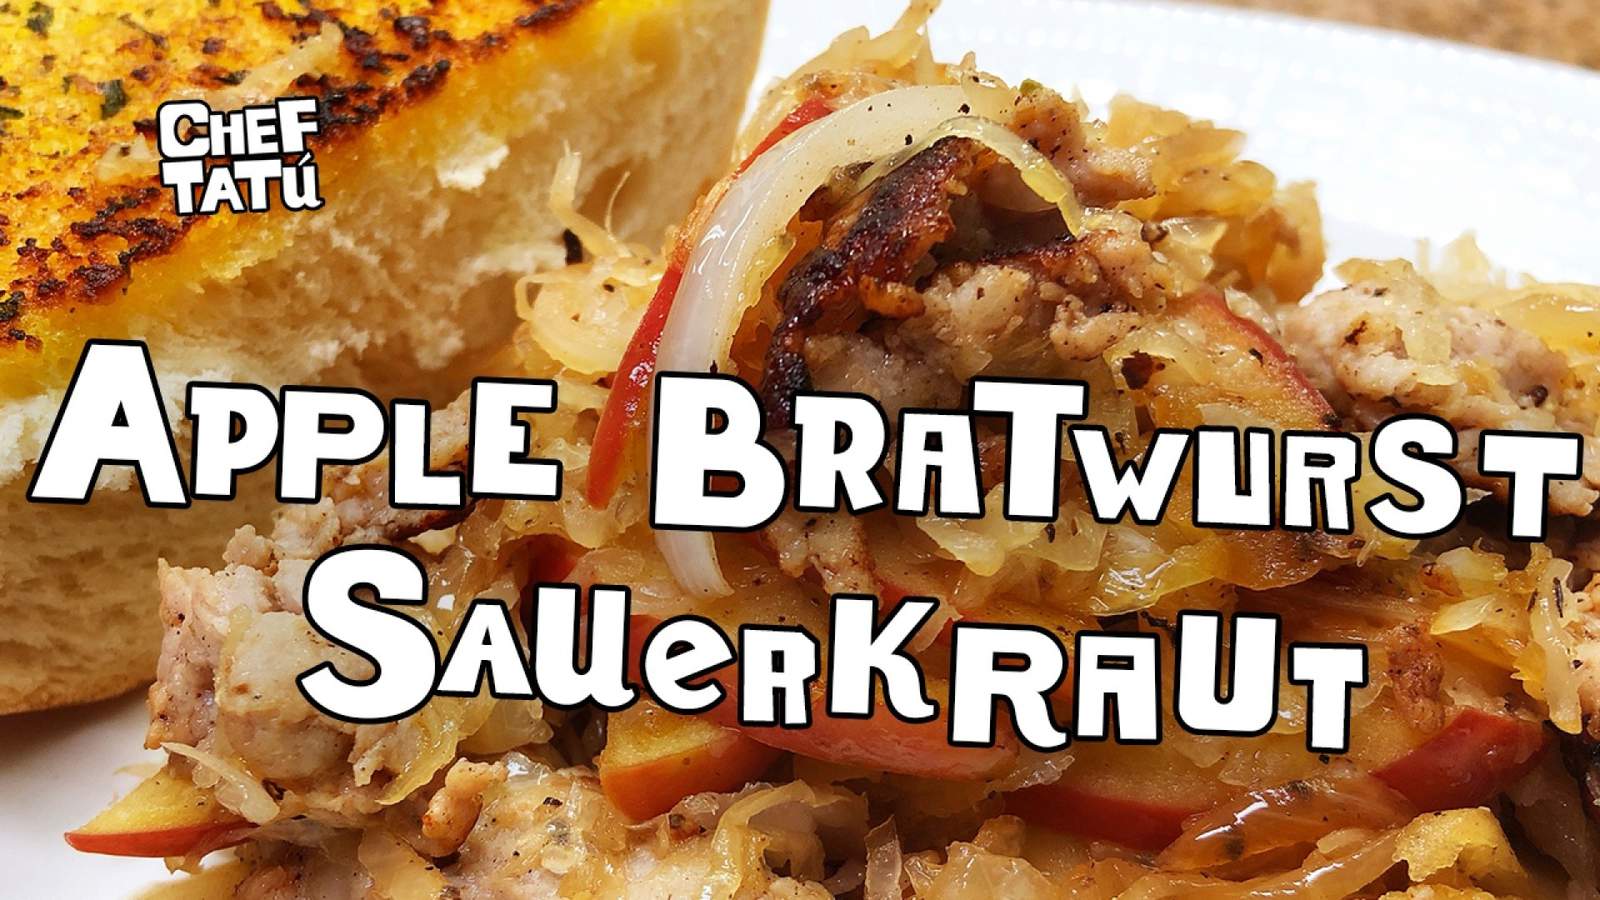 Apple Bratwurst Sauerkraut